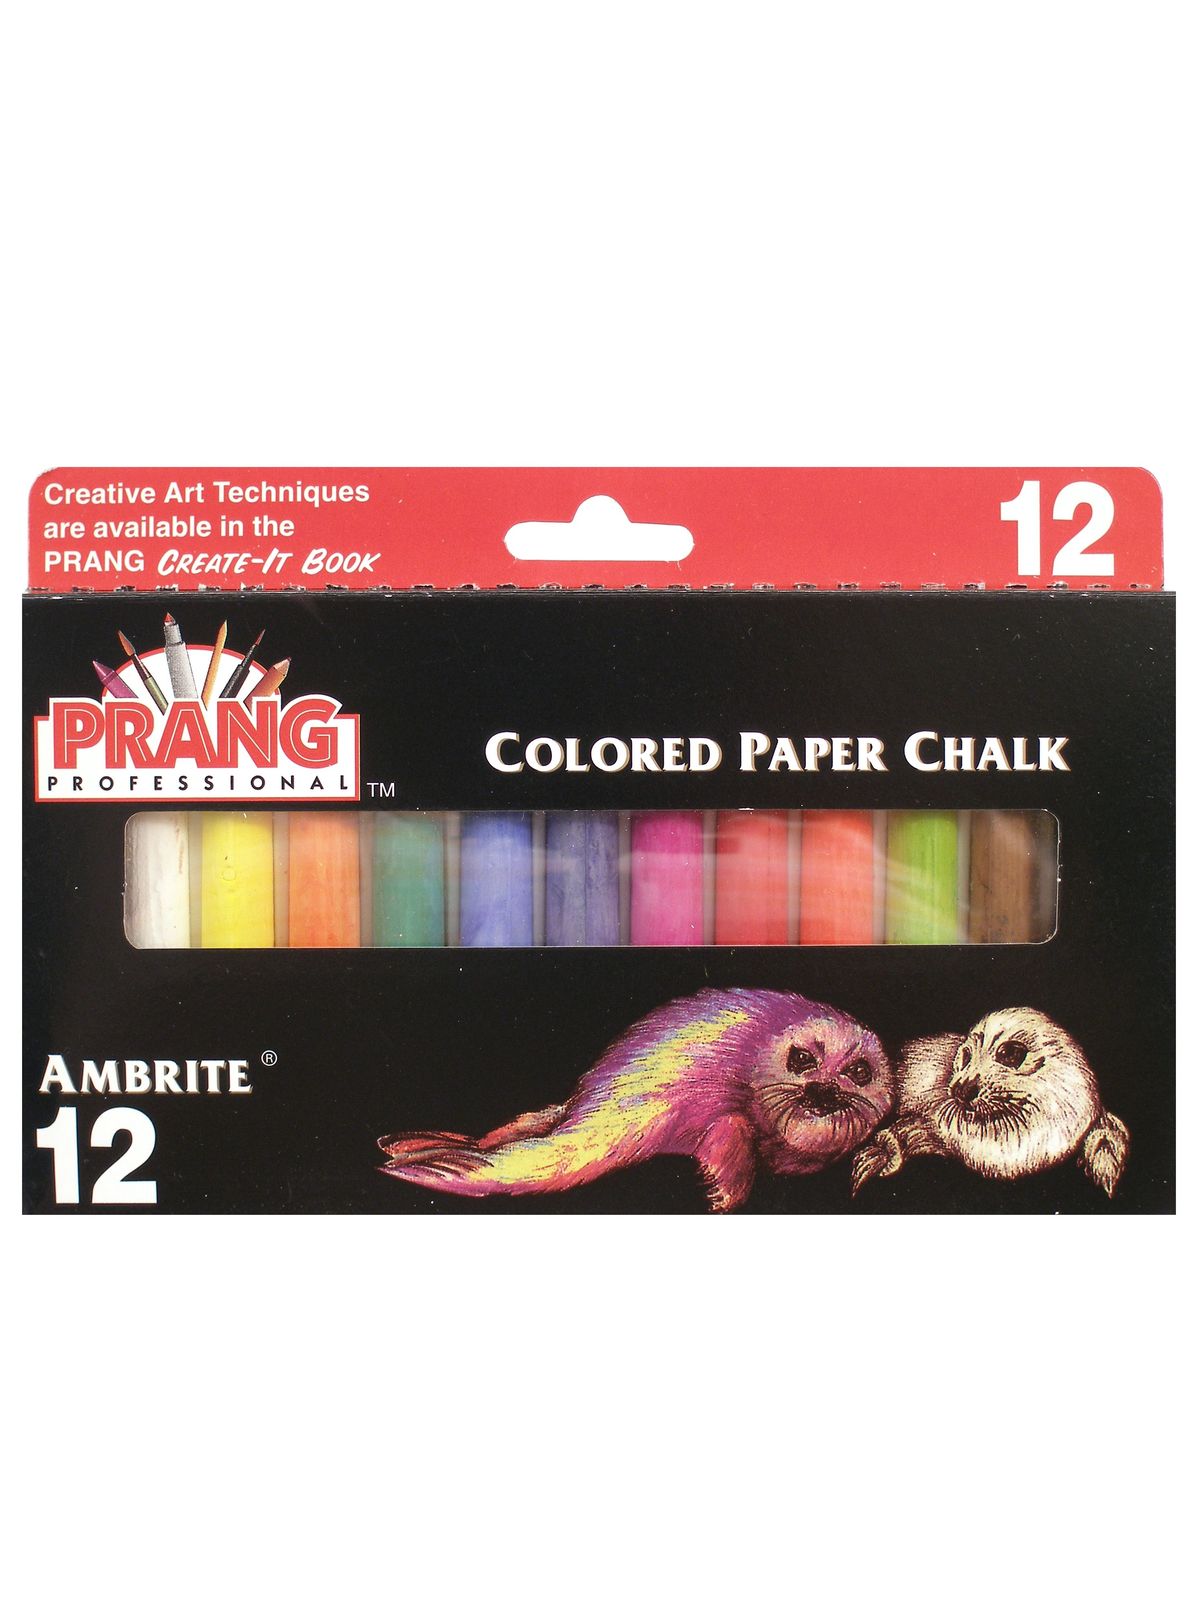 Ambrite Colored Paper Chalk Box Of 12